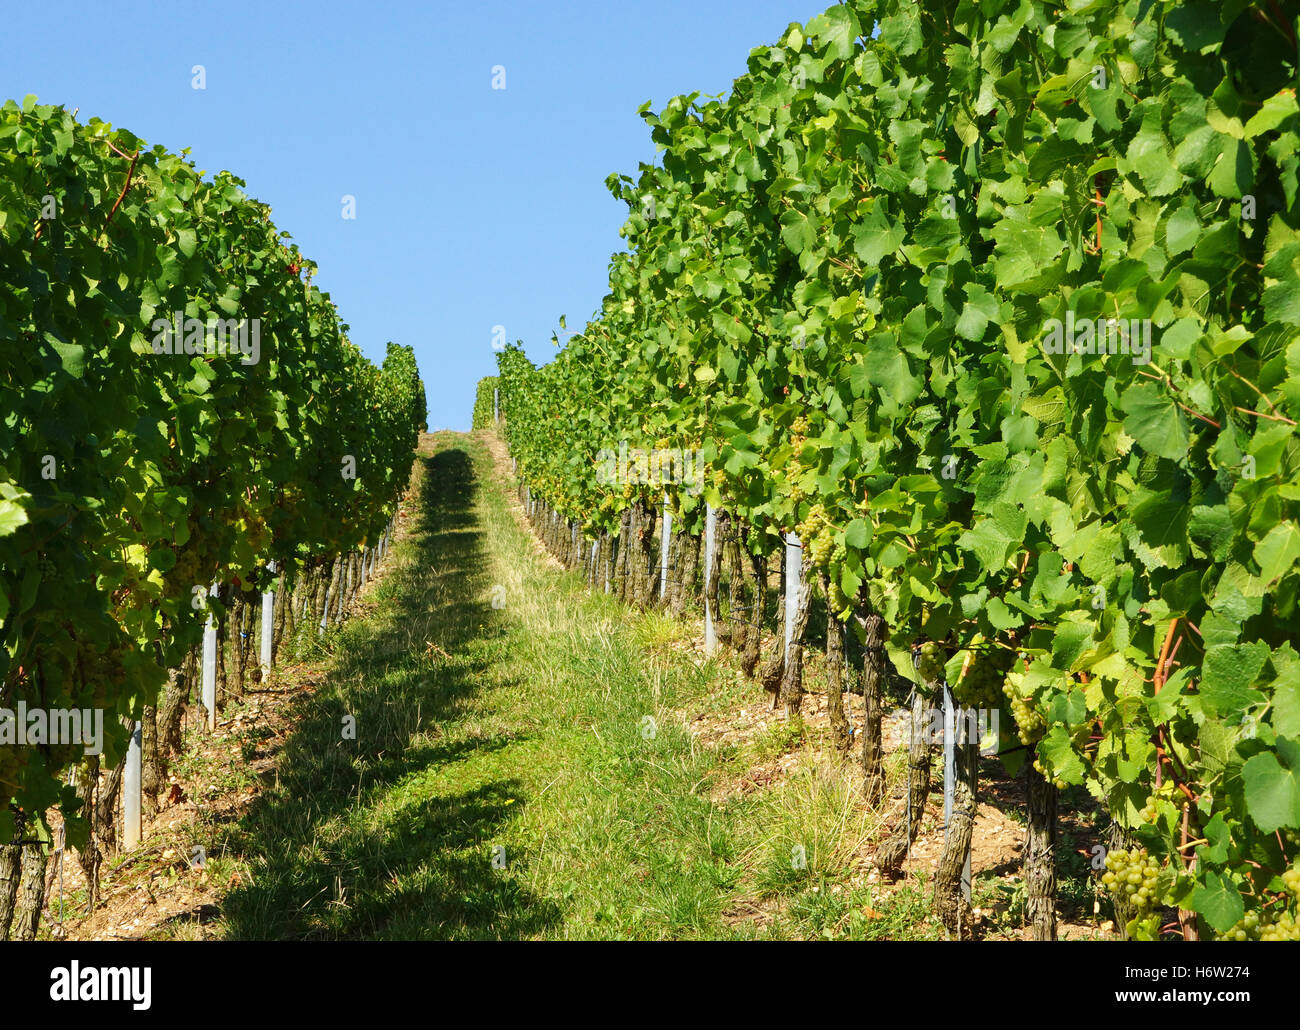 weinberg - vineyard Stock Photo